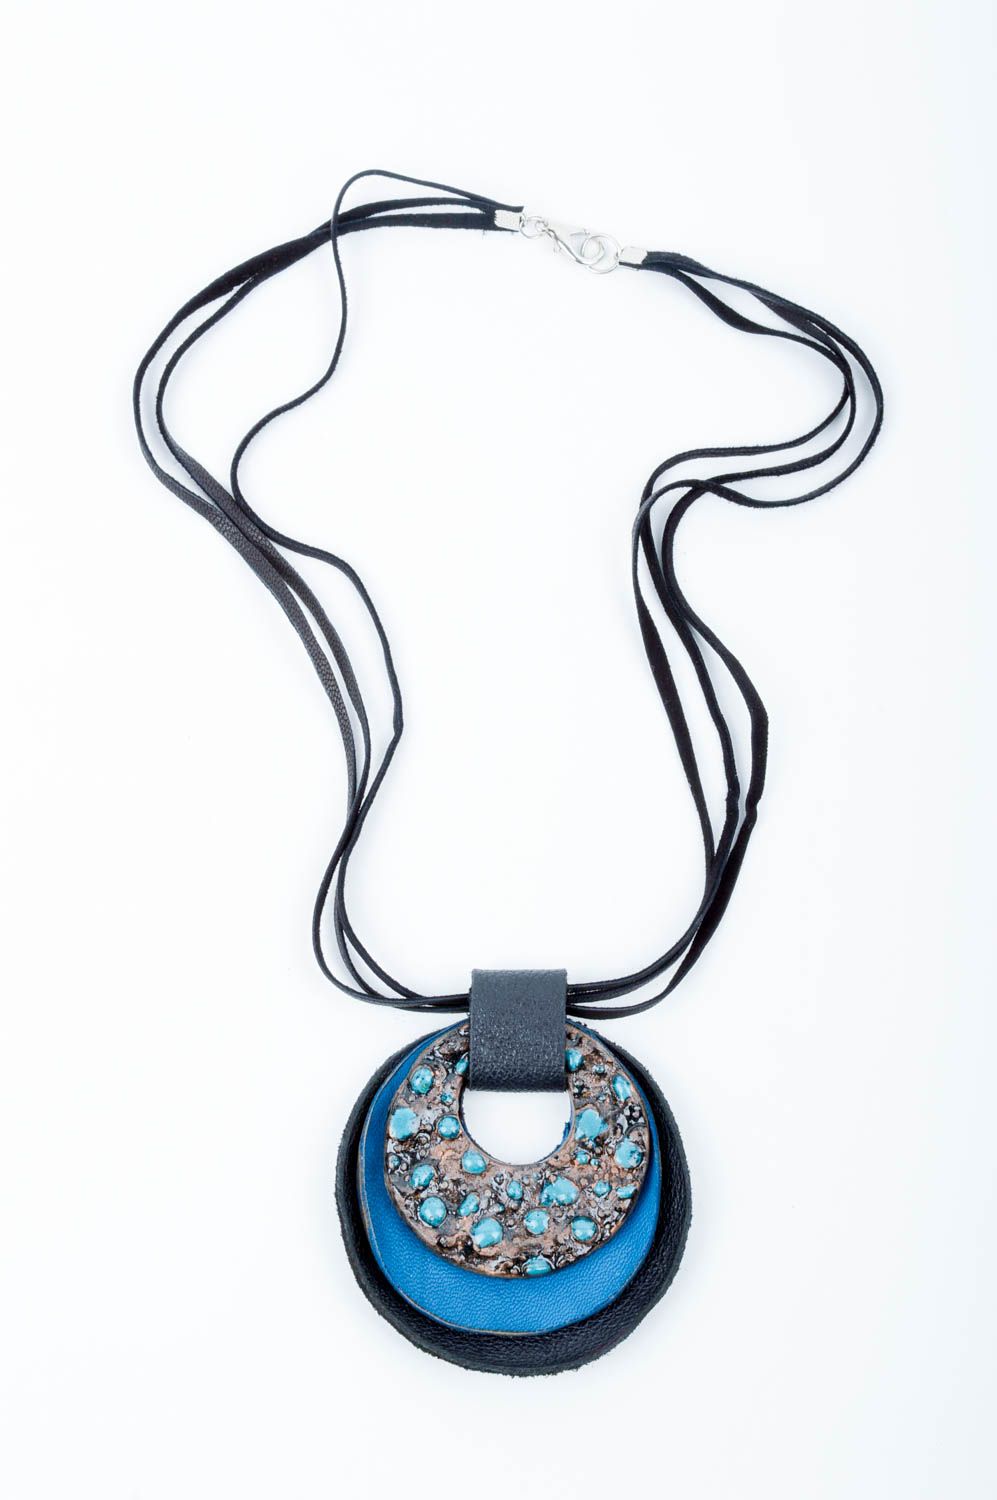 Массивное ожерелье ручной работы аксессуар из кожи керамическое украшение фото 1